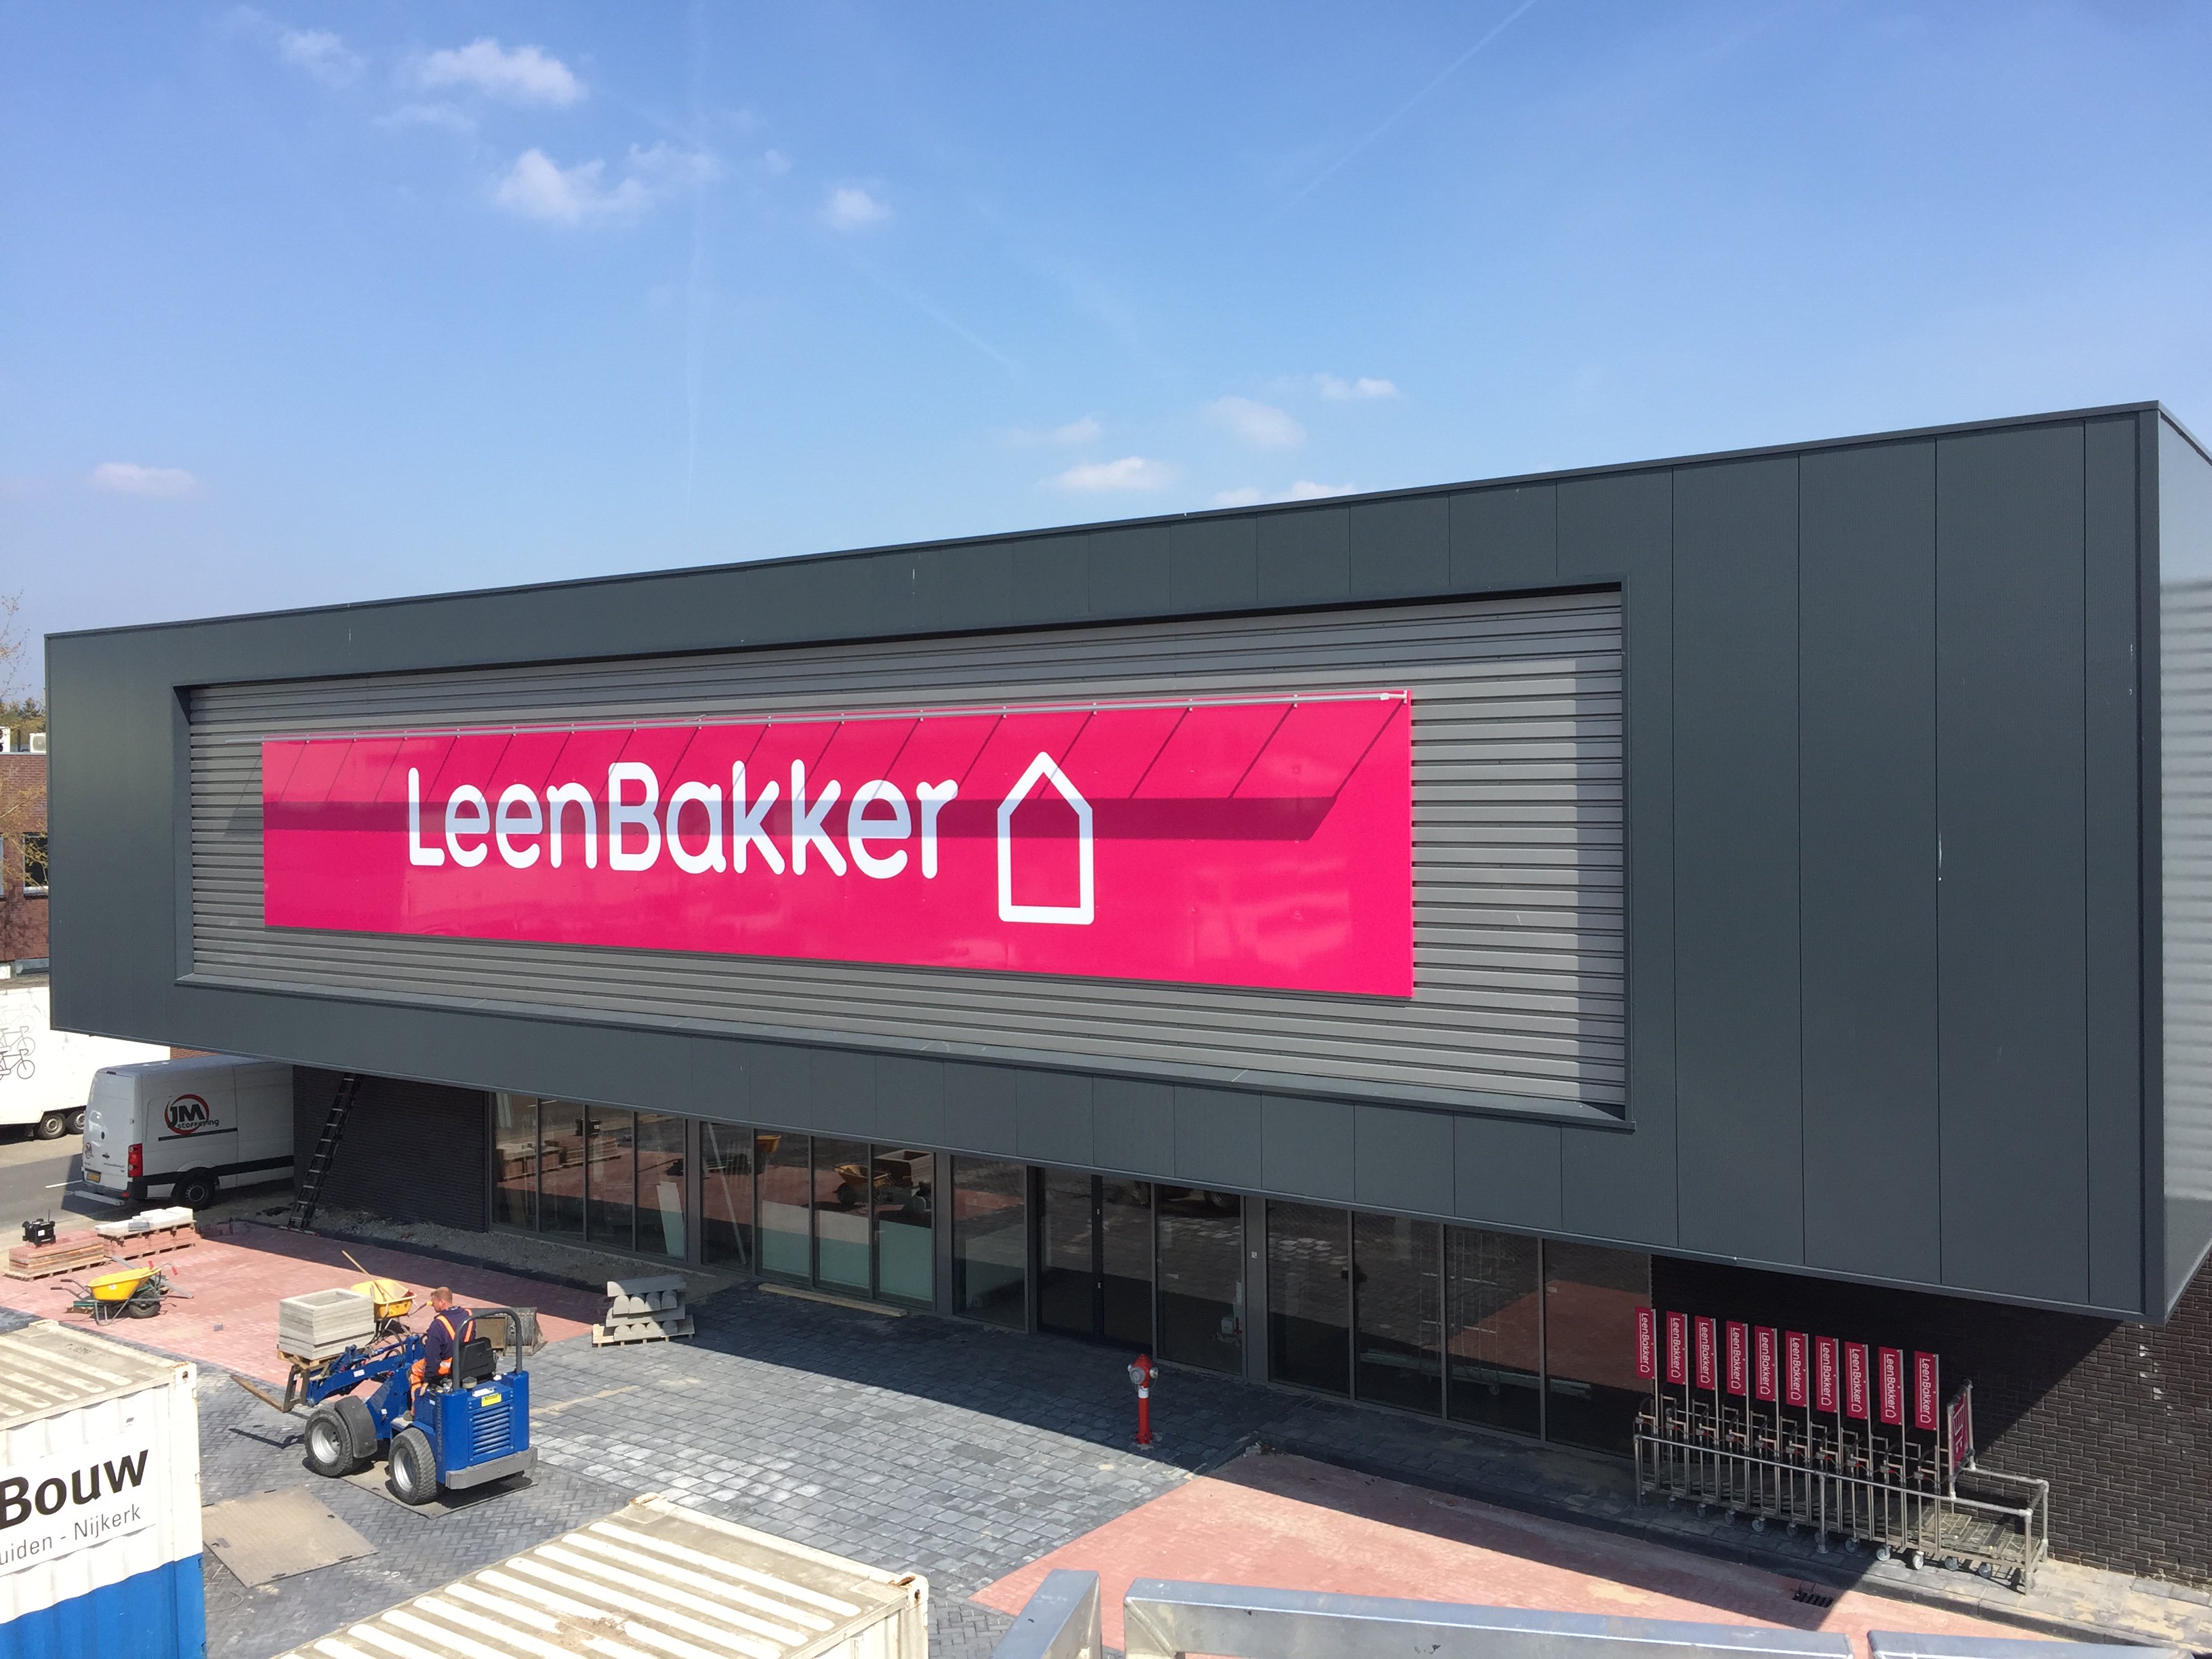 lamp Eindig Vormen Reklet on Twitter: "Reklet laat signing spreken! Wij plaatsen momenteel  deze ruim 19 meter brede gevelreclame voor Leen Bakker in Hilversum.  #signing #reclame https://t.co/3NlLejBpe4" / Twitter